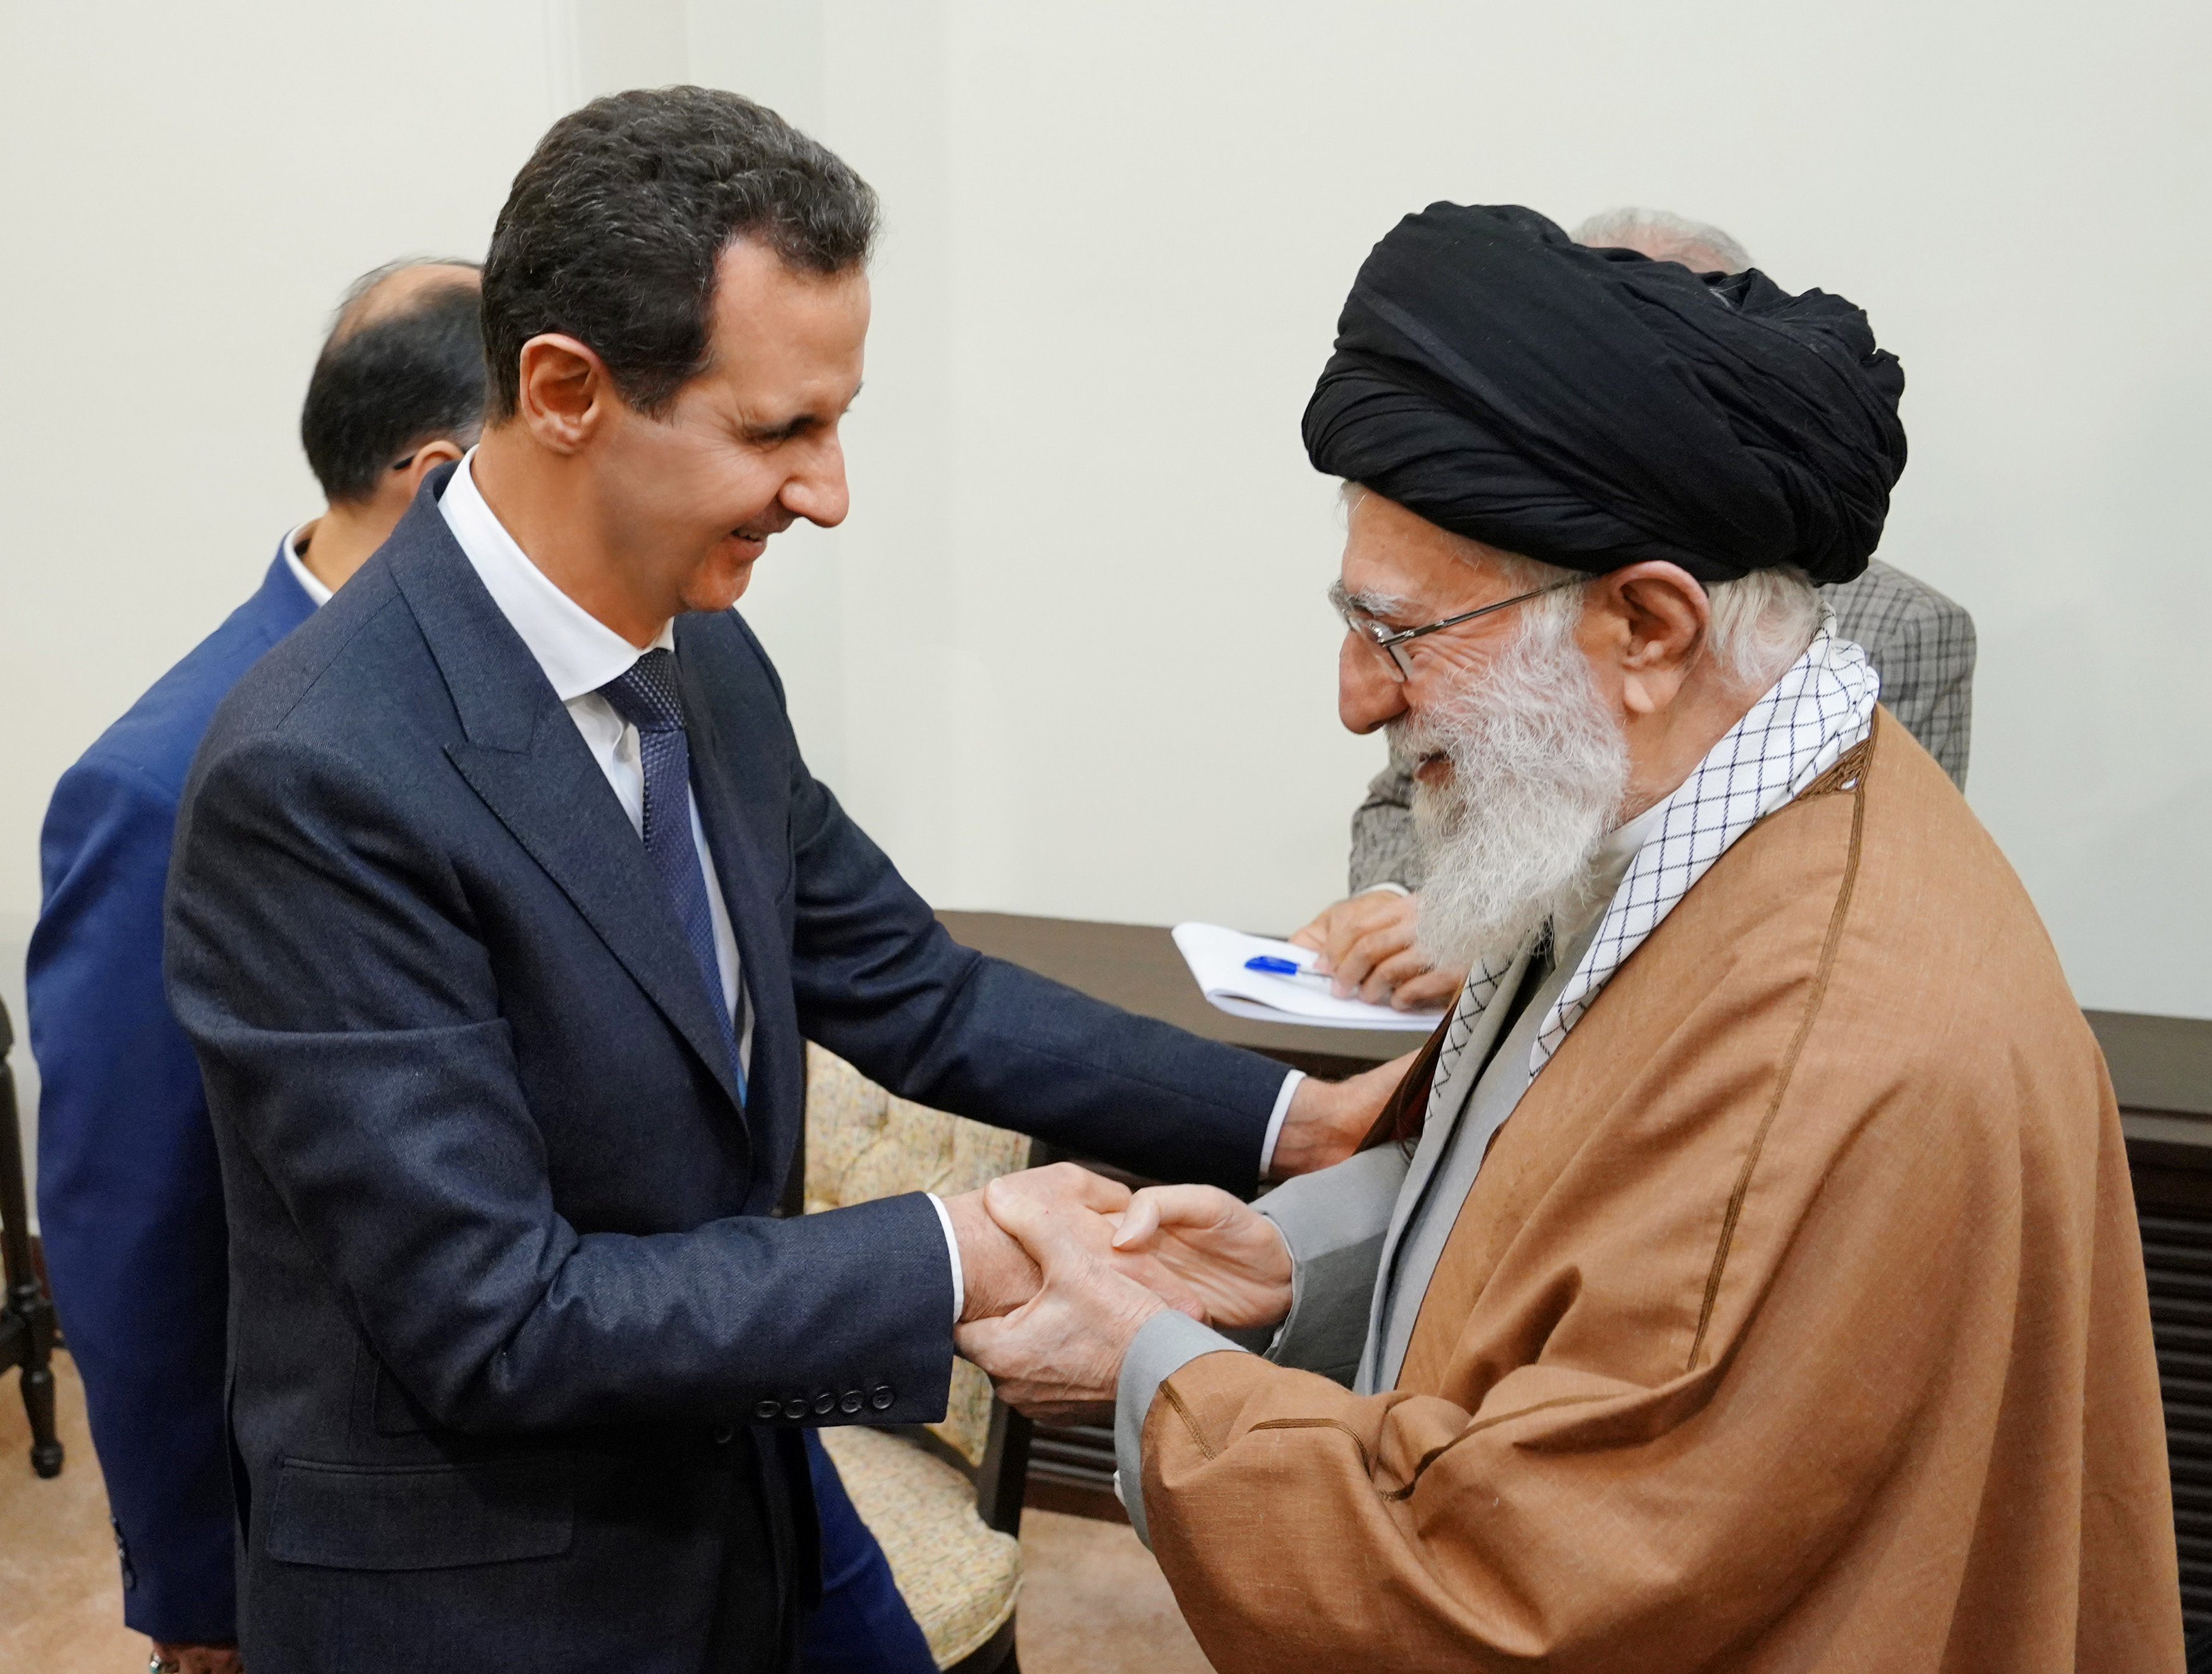 زيارة الأسد لطهران كانت مدخلا لاستقالة روحانى